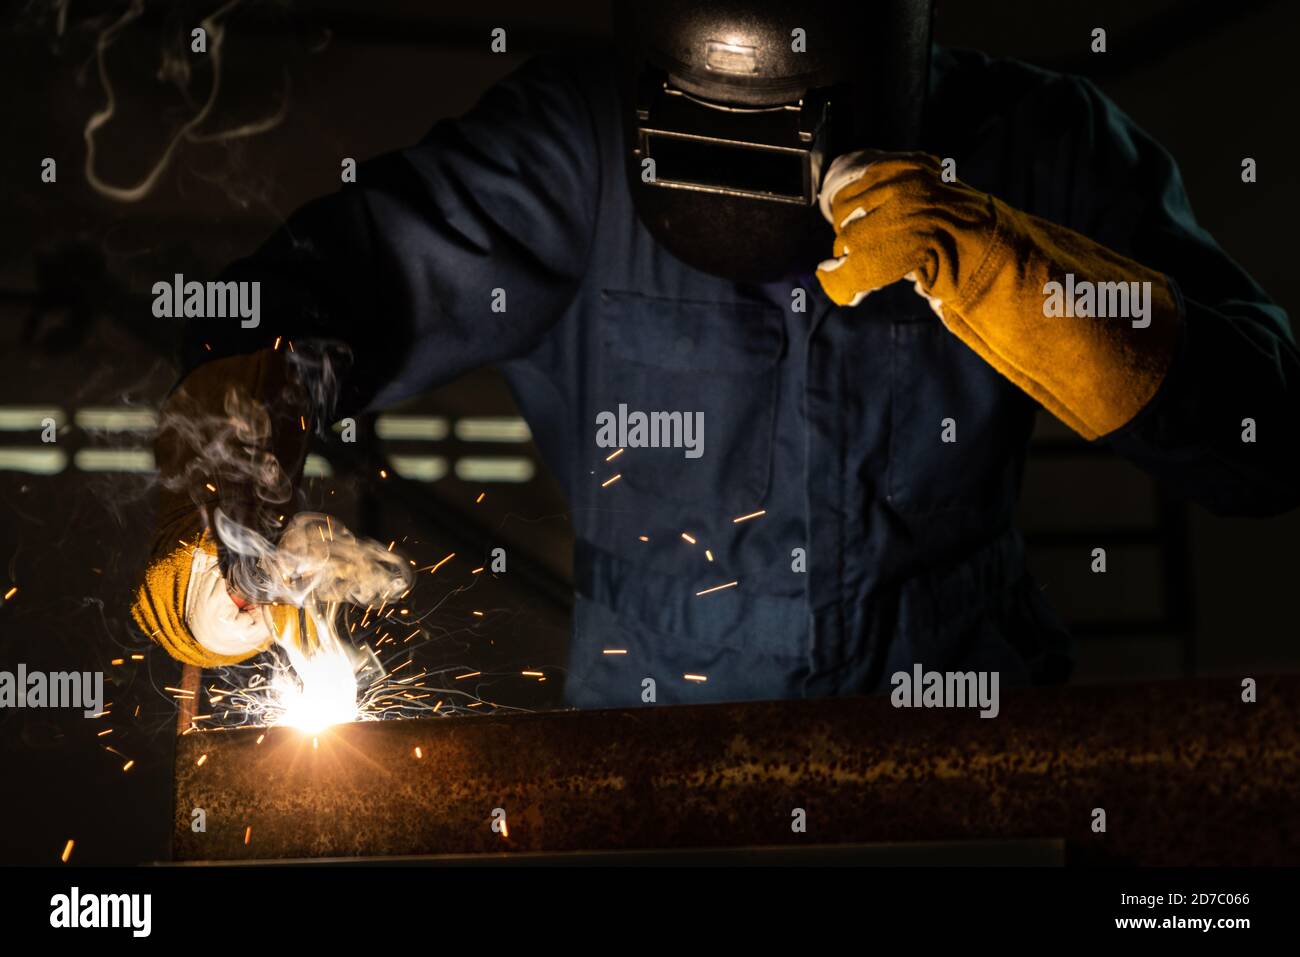 Soudeur de métal travaillant avec une machine à souder à l'arc pour souder l'acier en usine tout en portant un équipement de sécurité. Fabrication et construction de métaux Banque D'Images